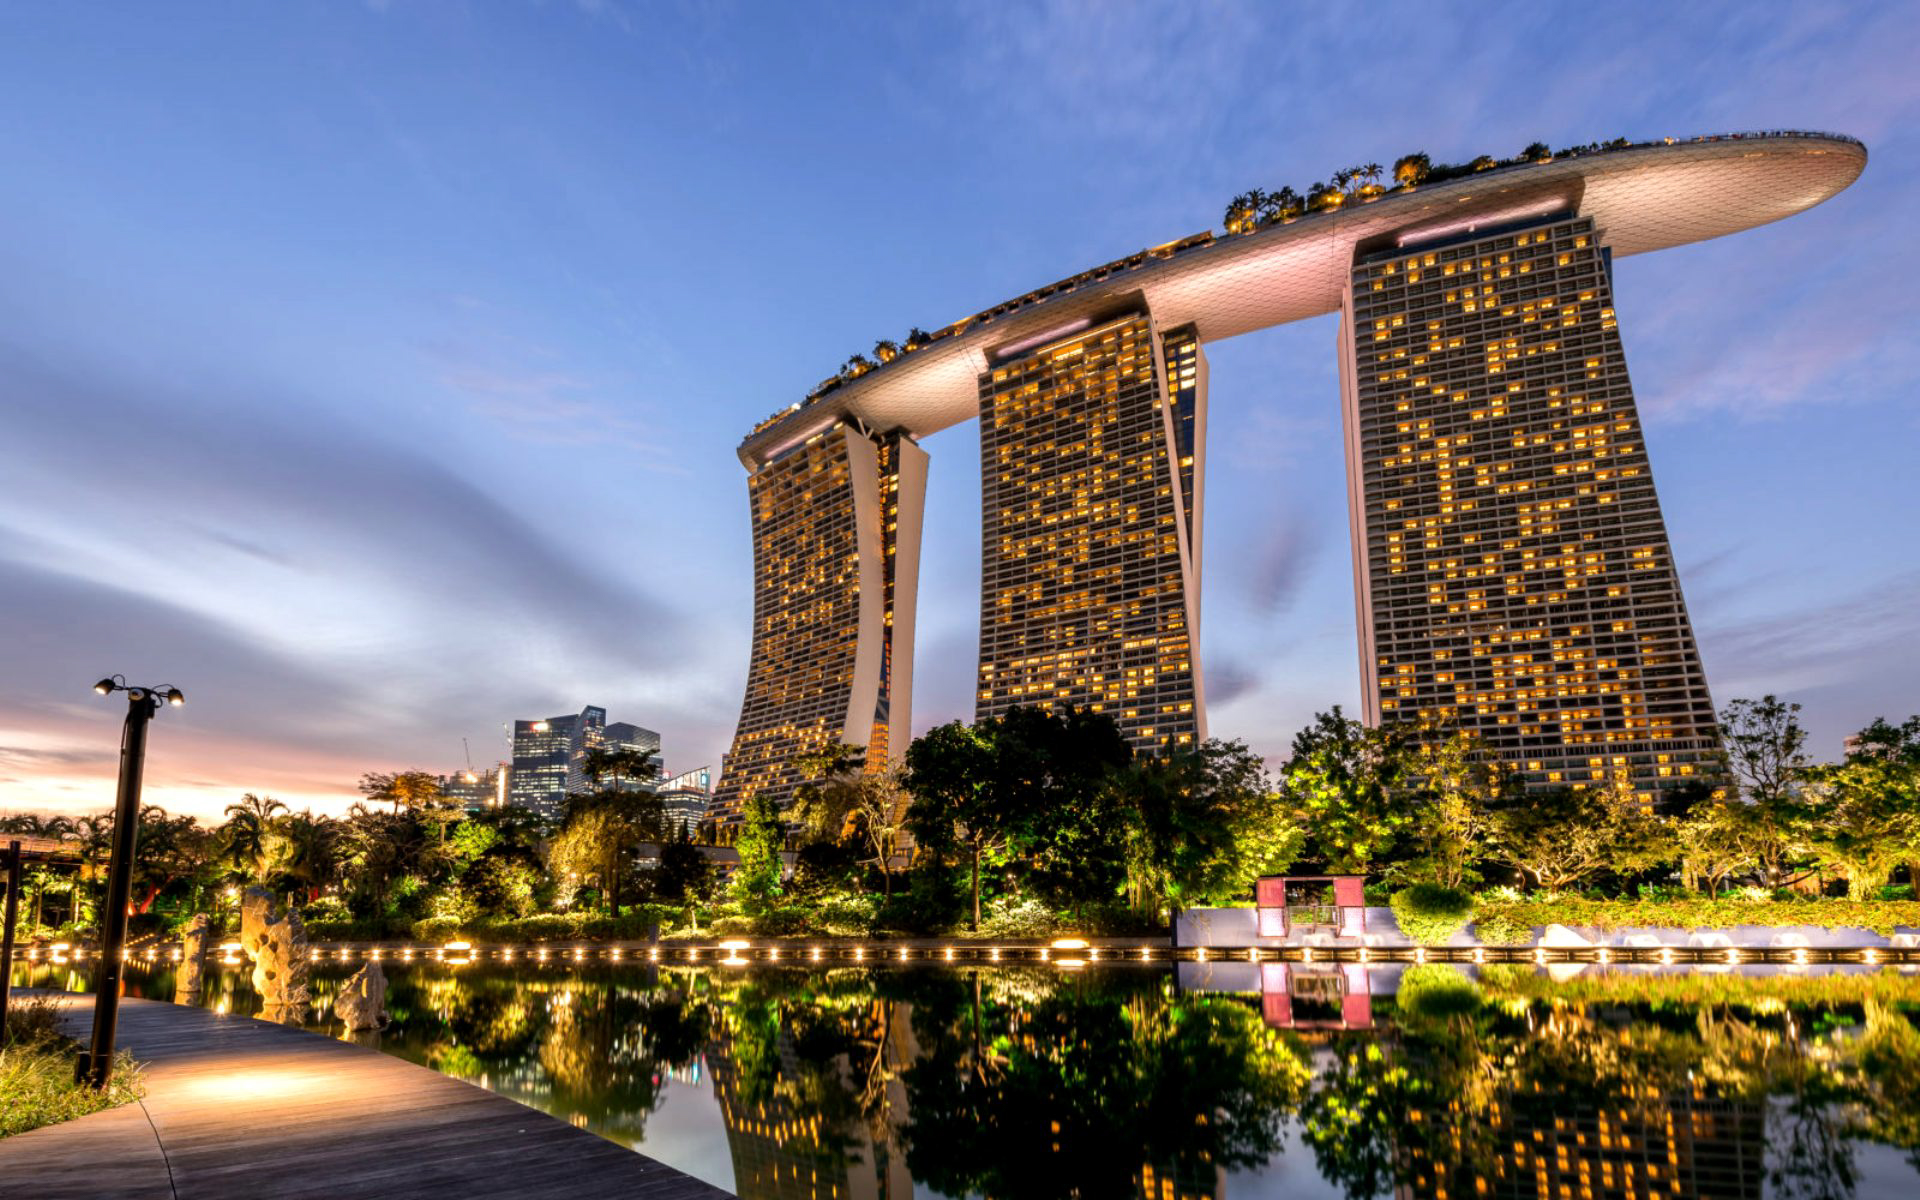 Arkkitehtoninen ihme ja ylellisyys yhdistettynä: Marina Bay Sands Singapore